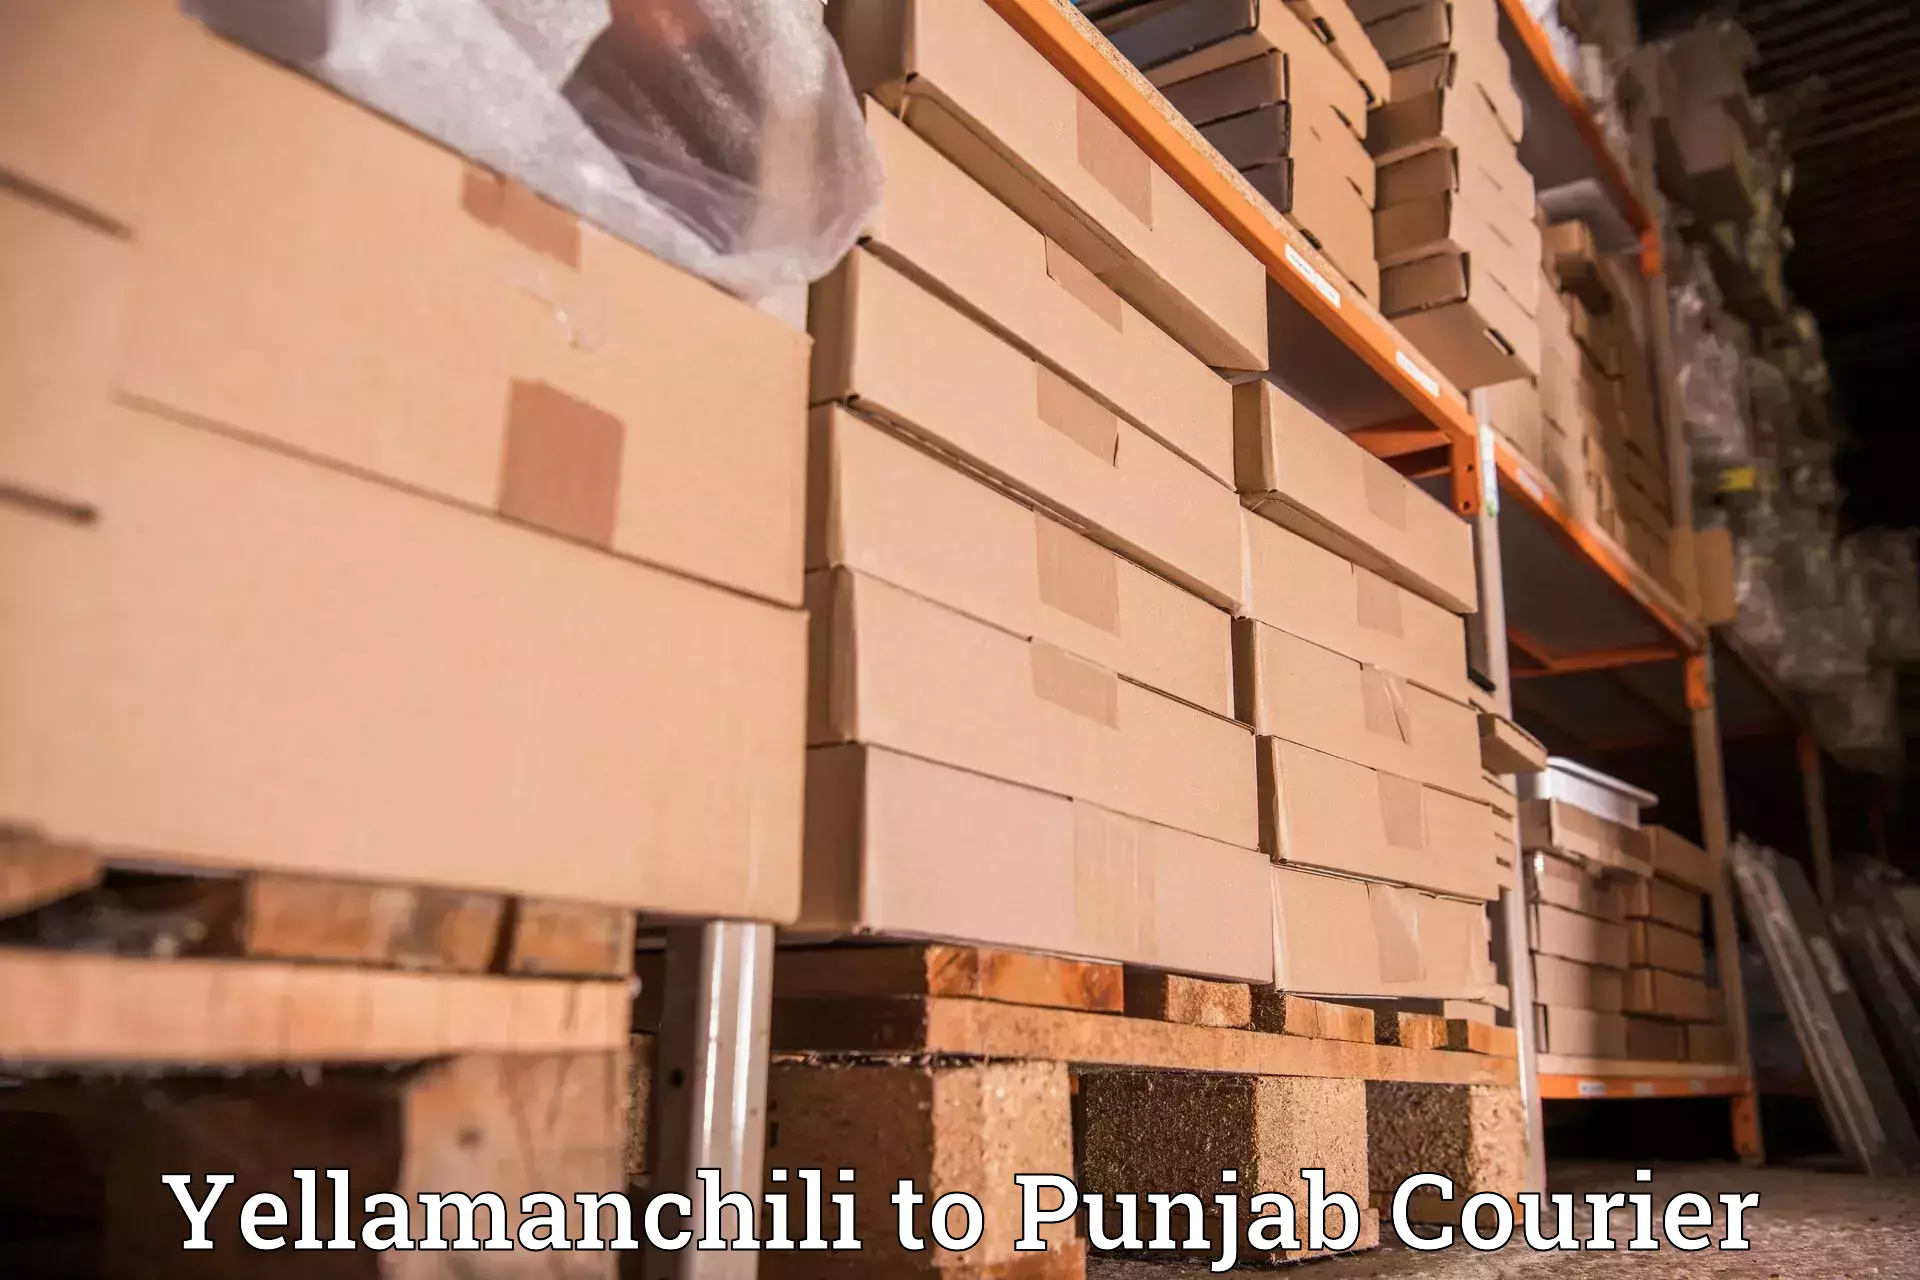 Multi-city courier Yellamanchili to Khanna